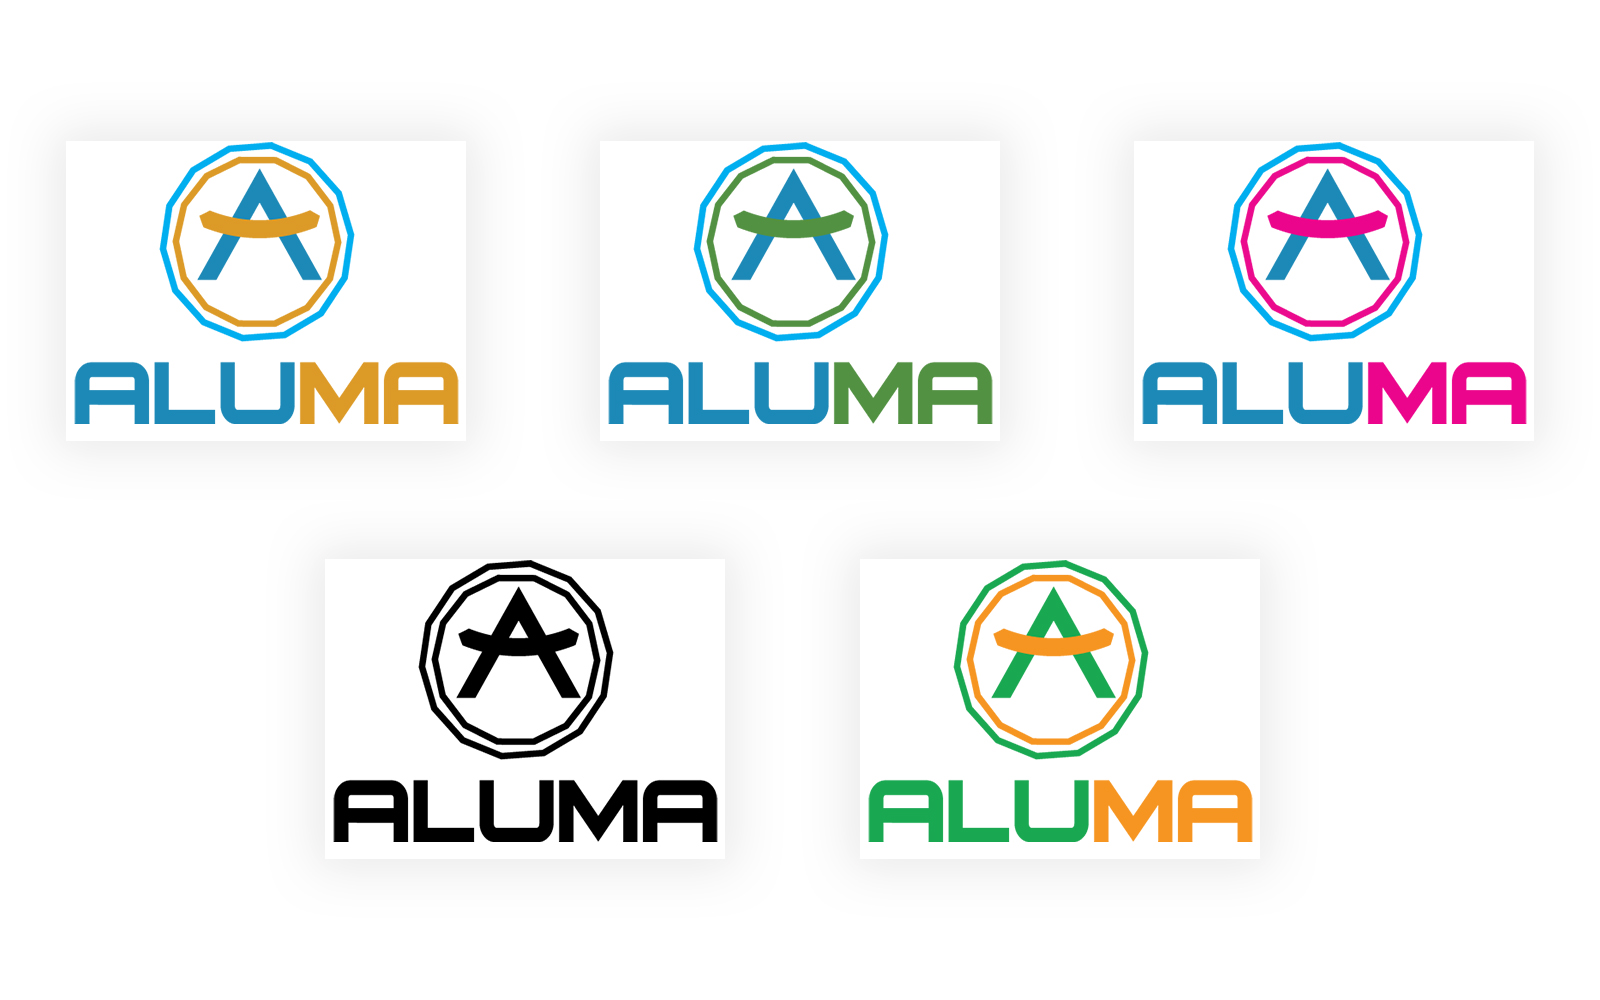 Aluma Educational Logo Template